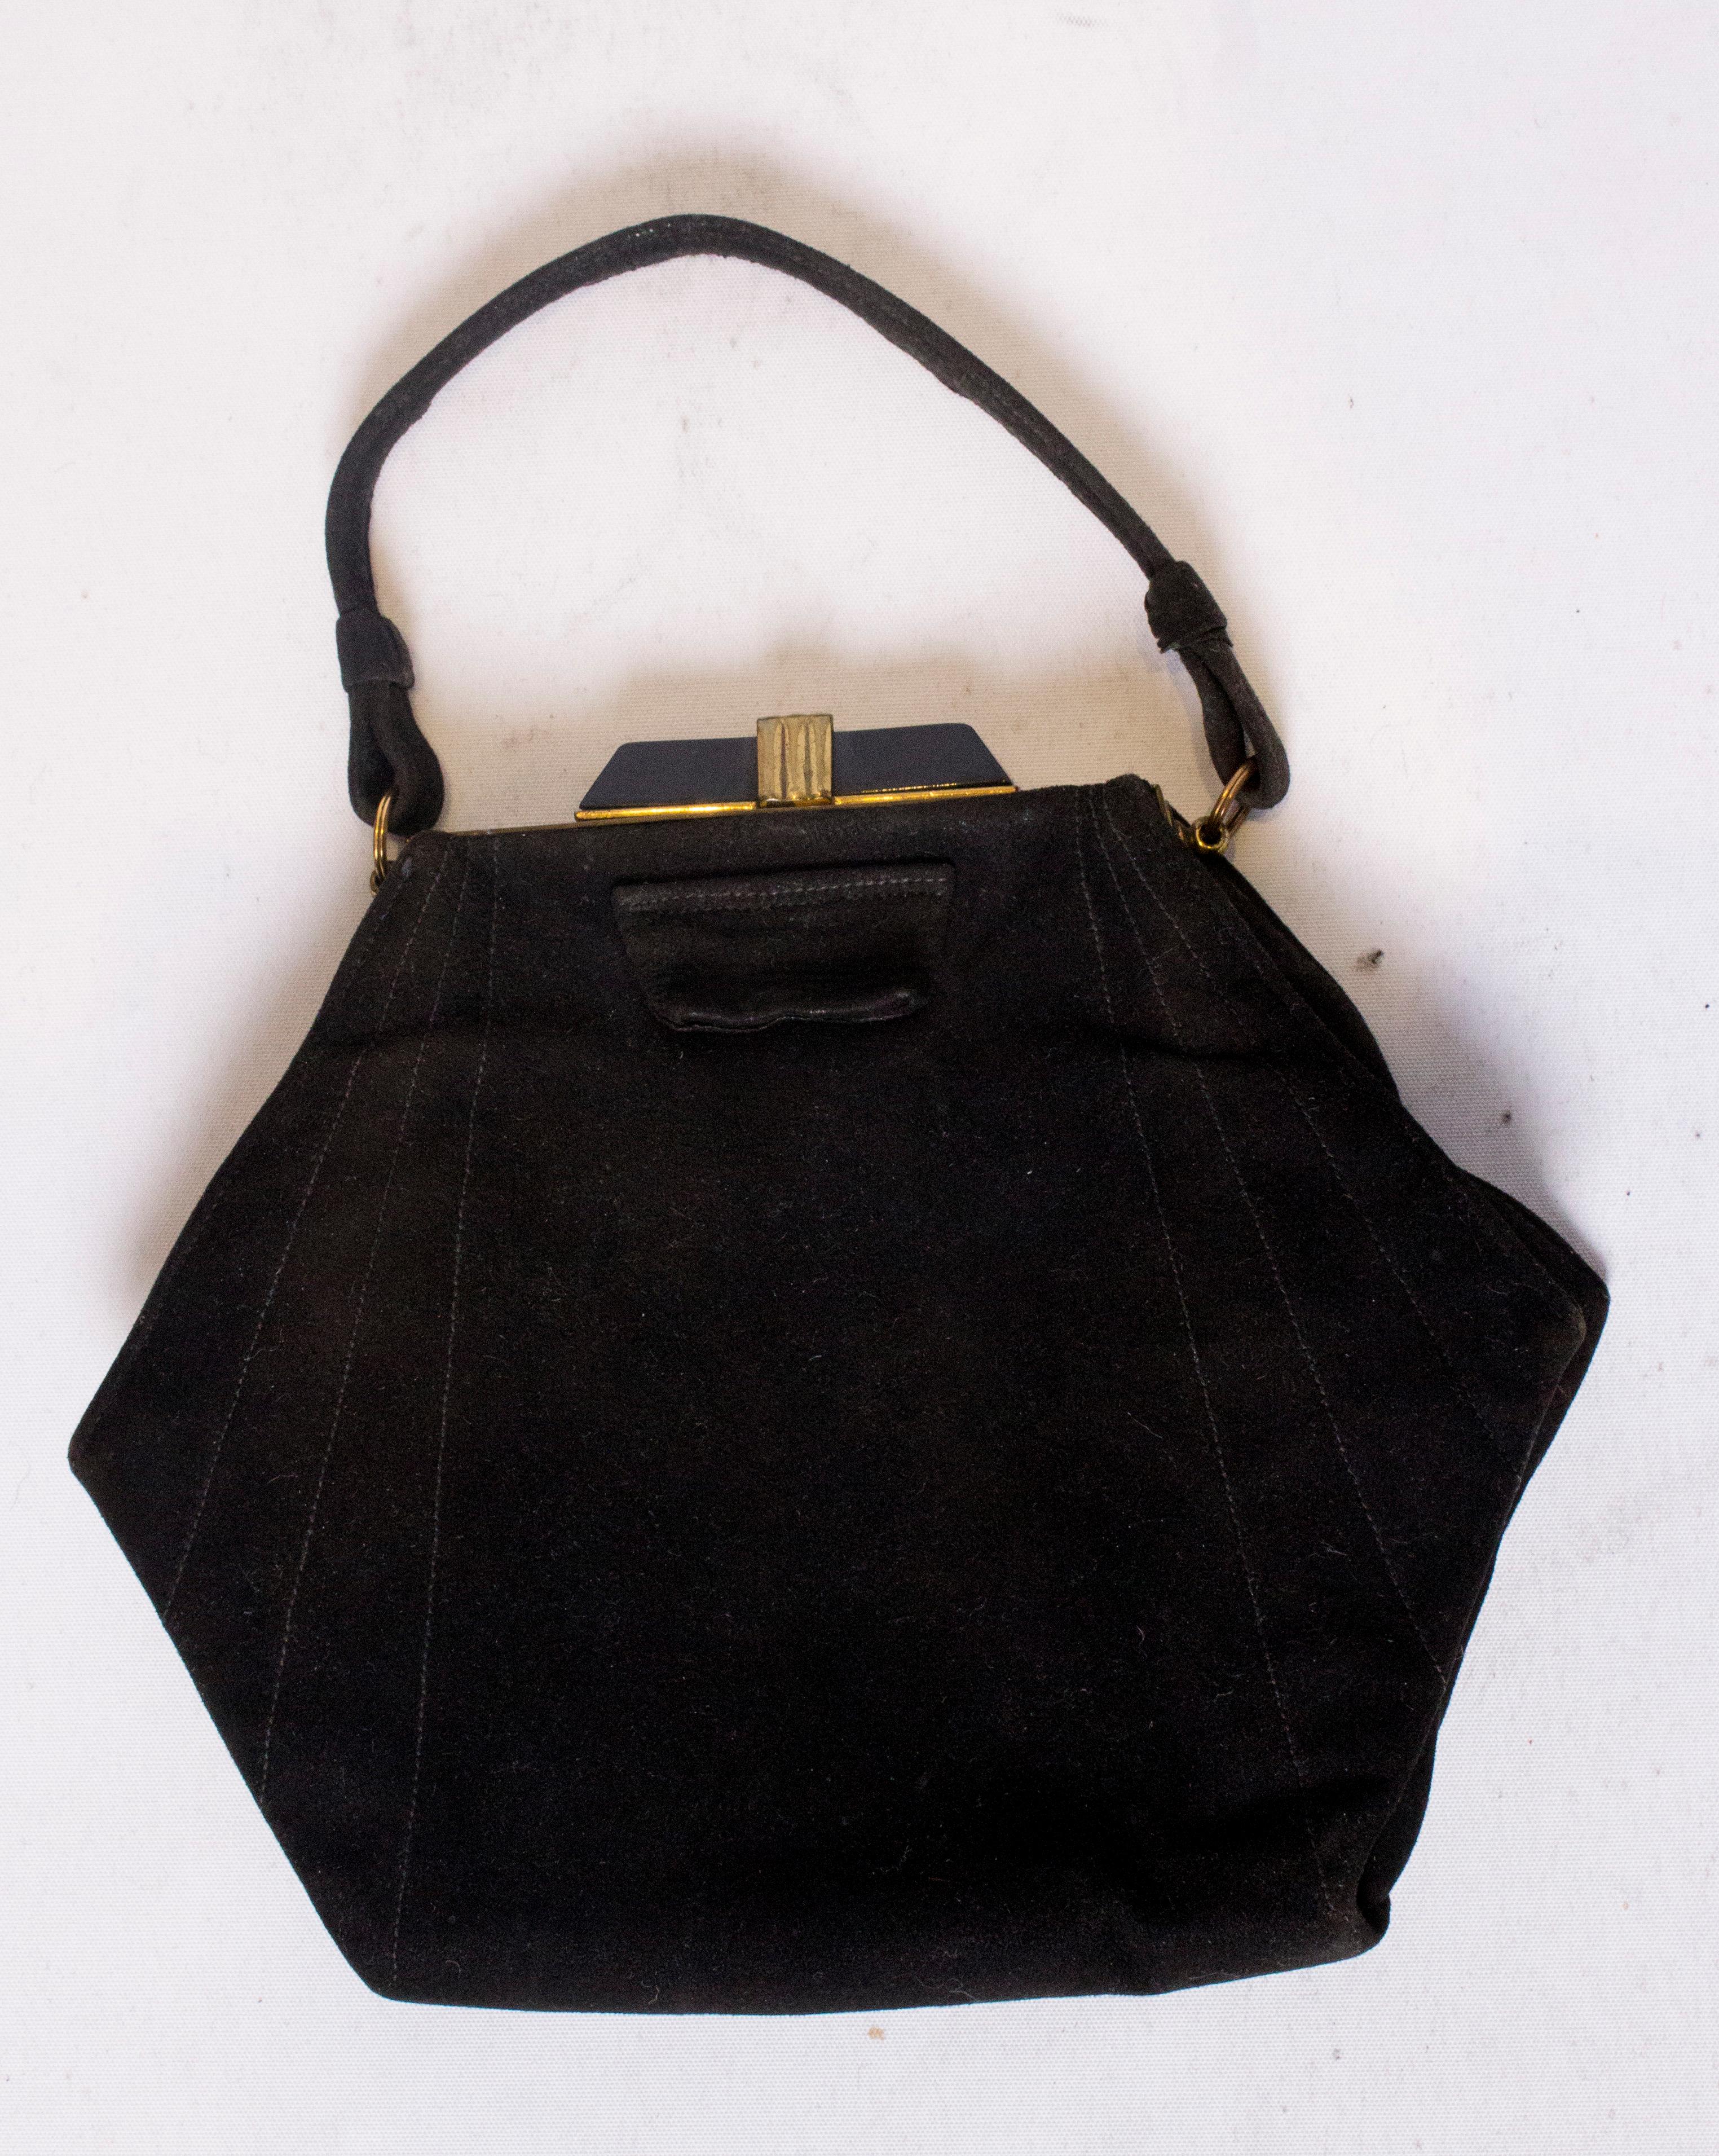 Eine schicke Art Deco Handtasche in Hexaganol-Form aus schwarzem Wildleder. Die Tasche hat einen dekorativen Art-Déco-Verschluss, ist mit Stoff gefüttert und verfügt über ein Innenfach mit integrierter Geldbörse.
Maße: Breite 8'', Höhe 7'', Tiefe